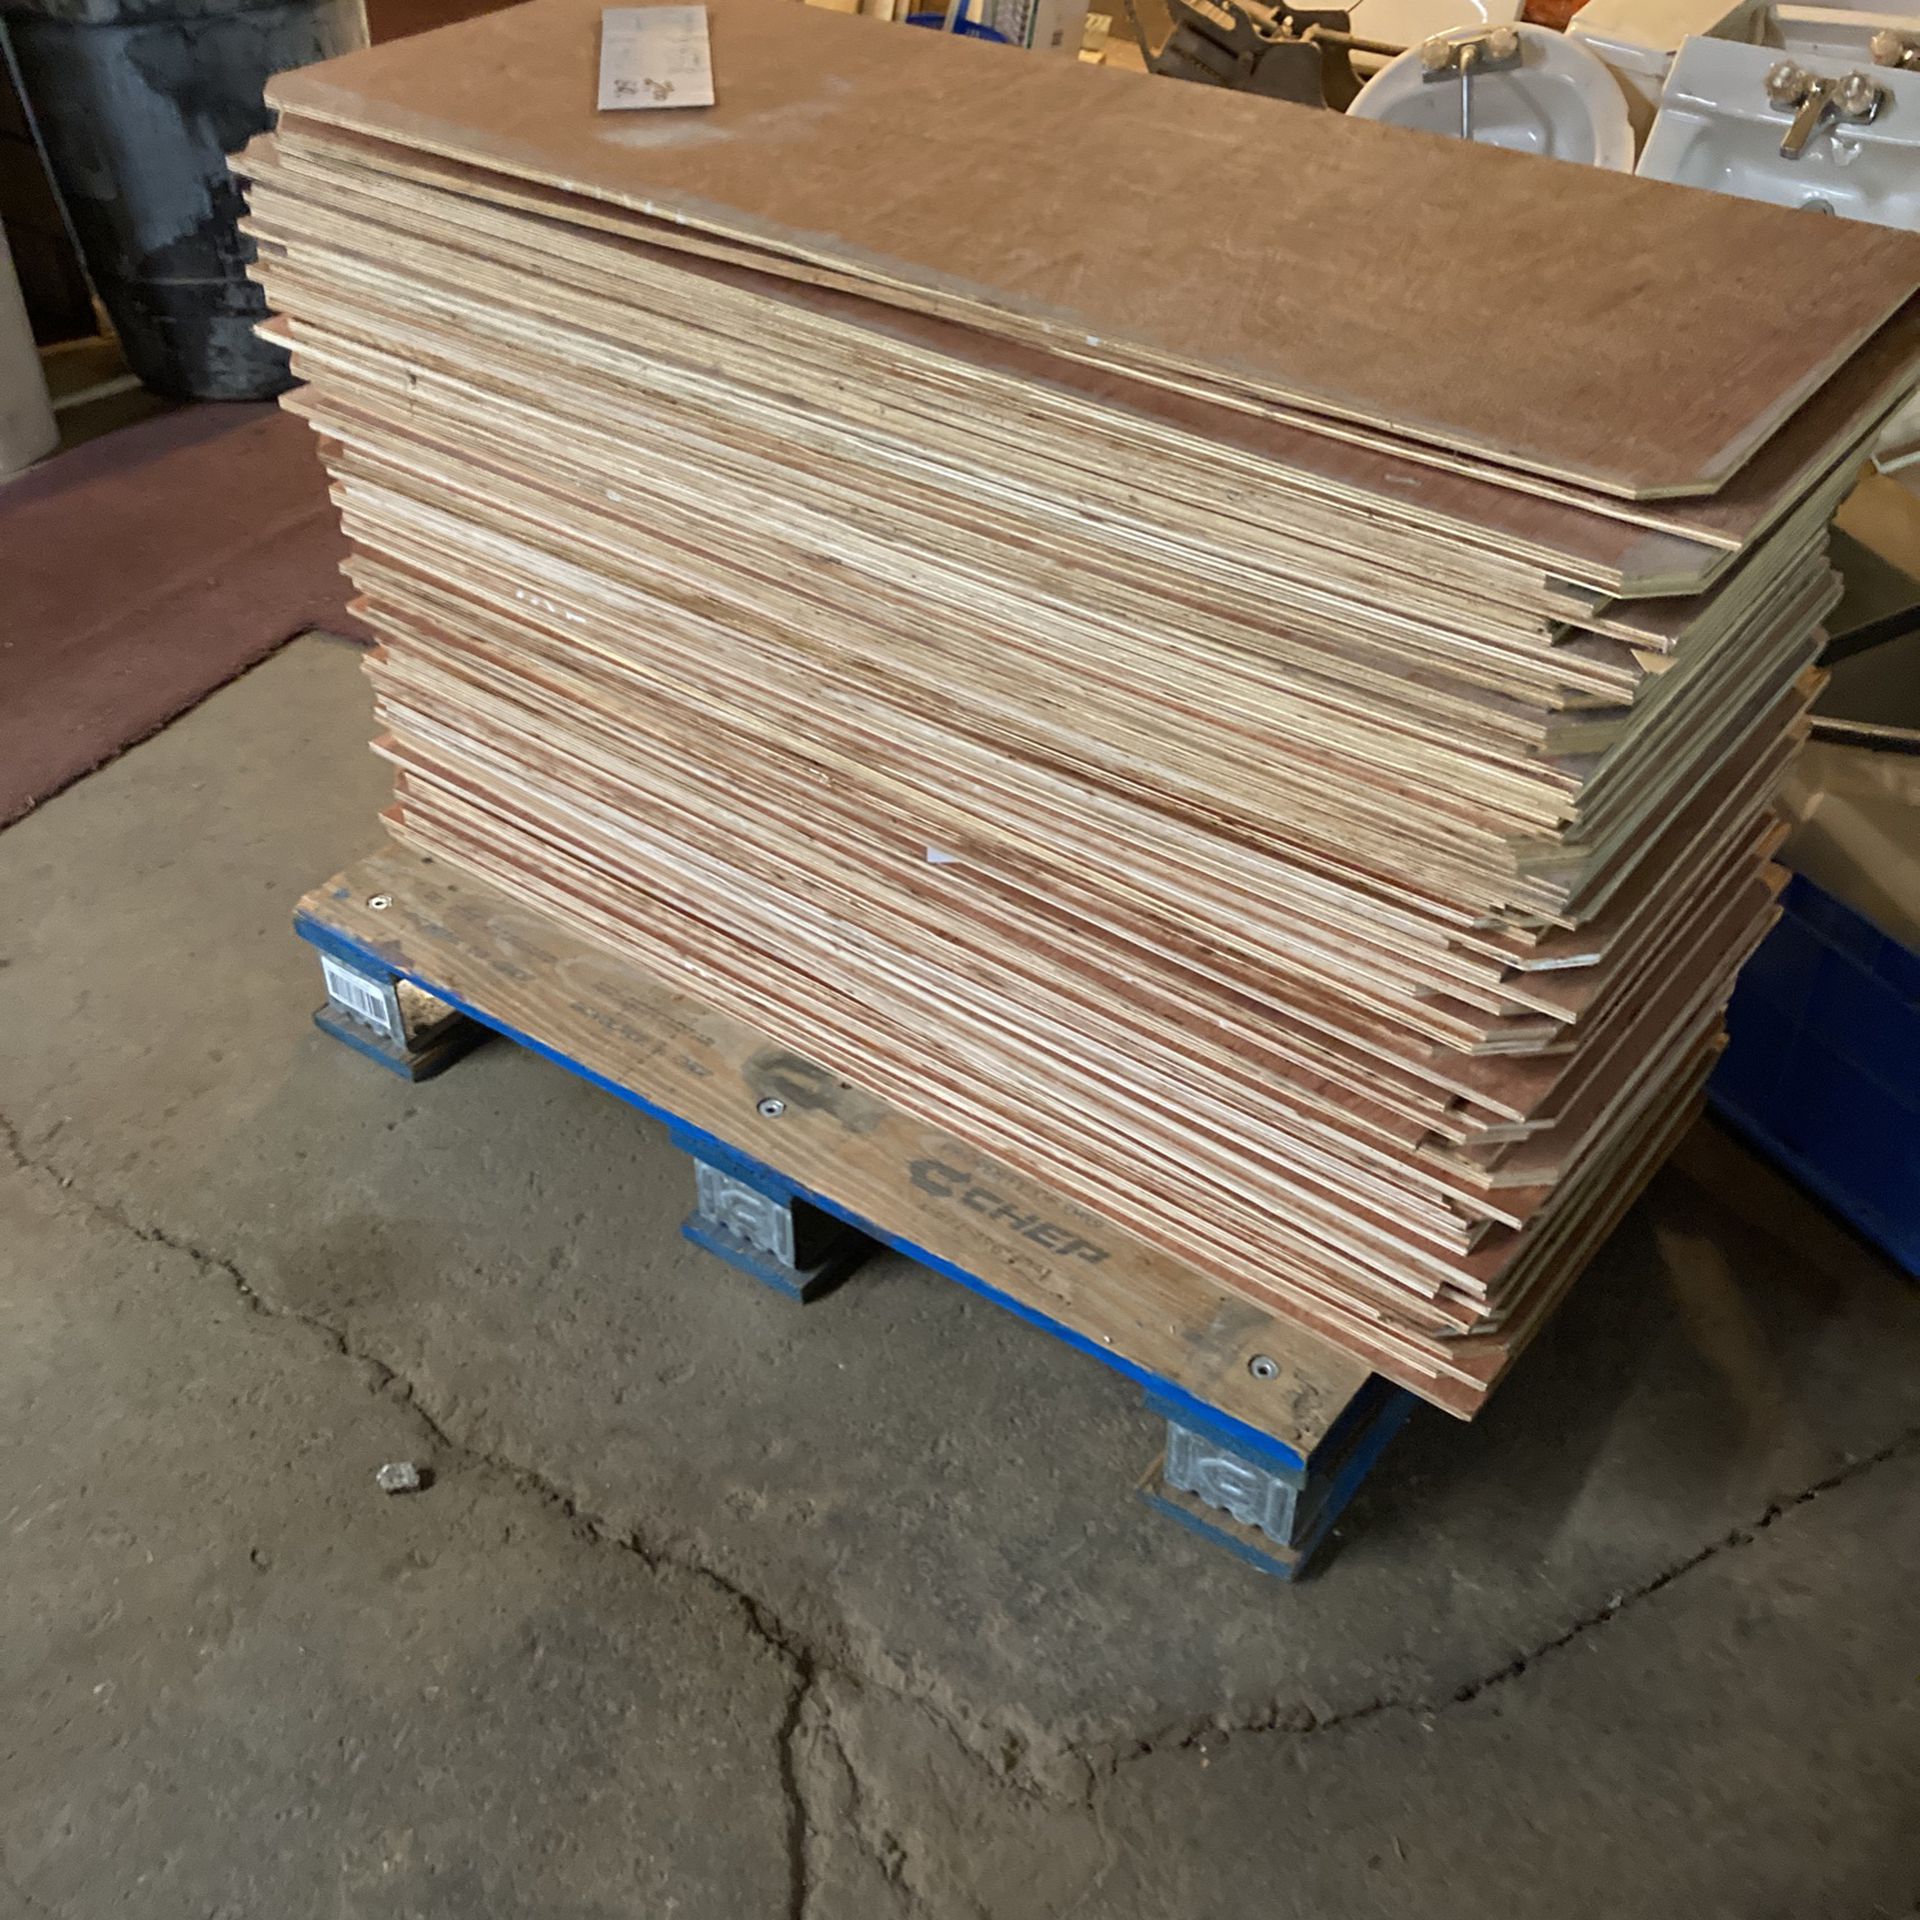 5 Ply 1/4” Plywood Sheets  No Knots.  